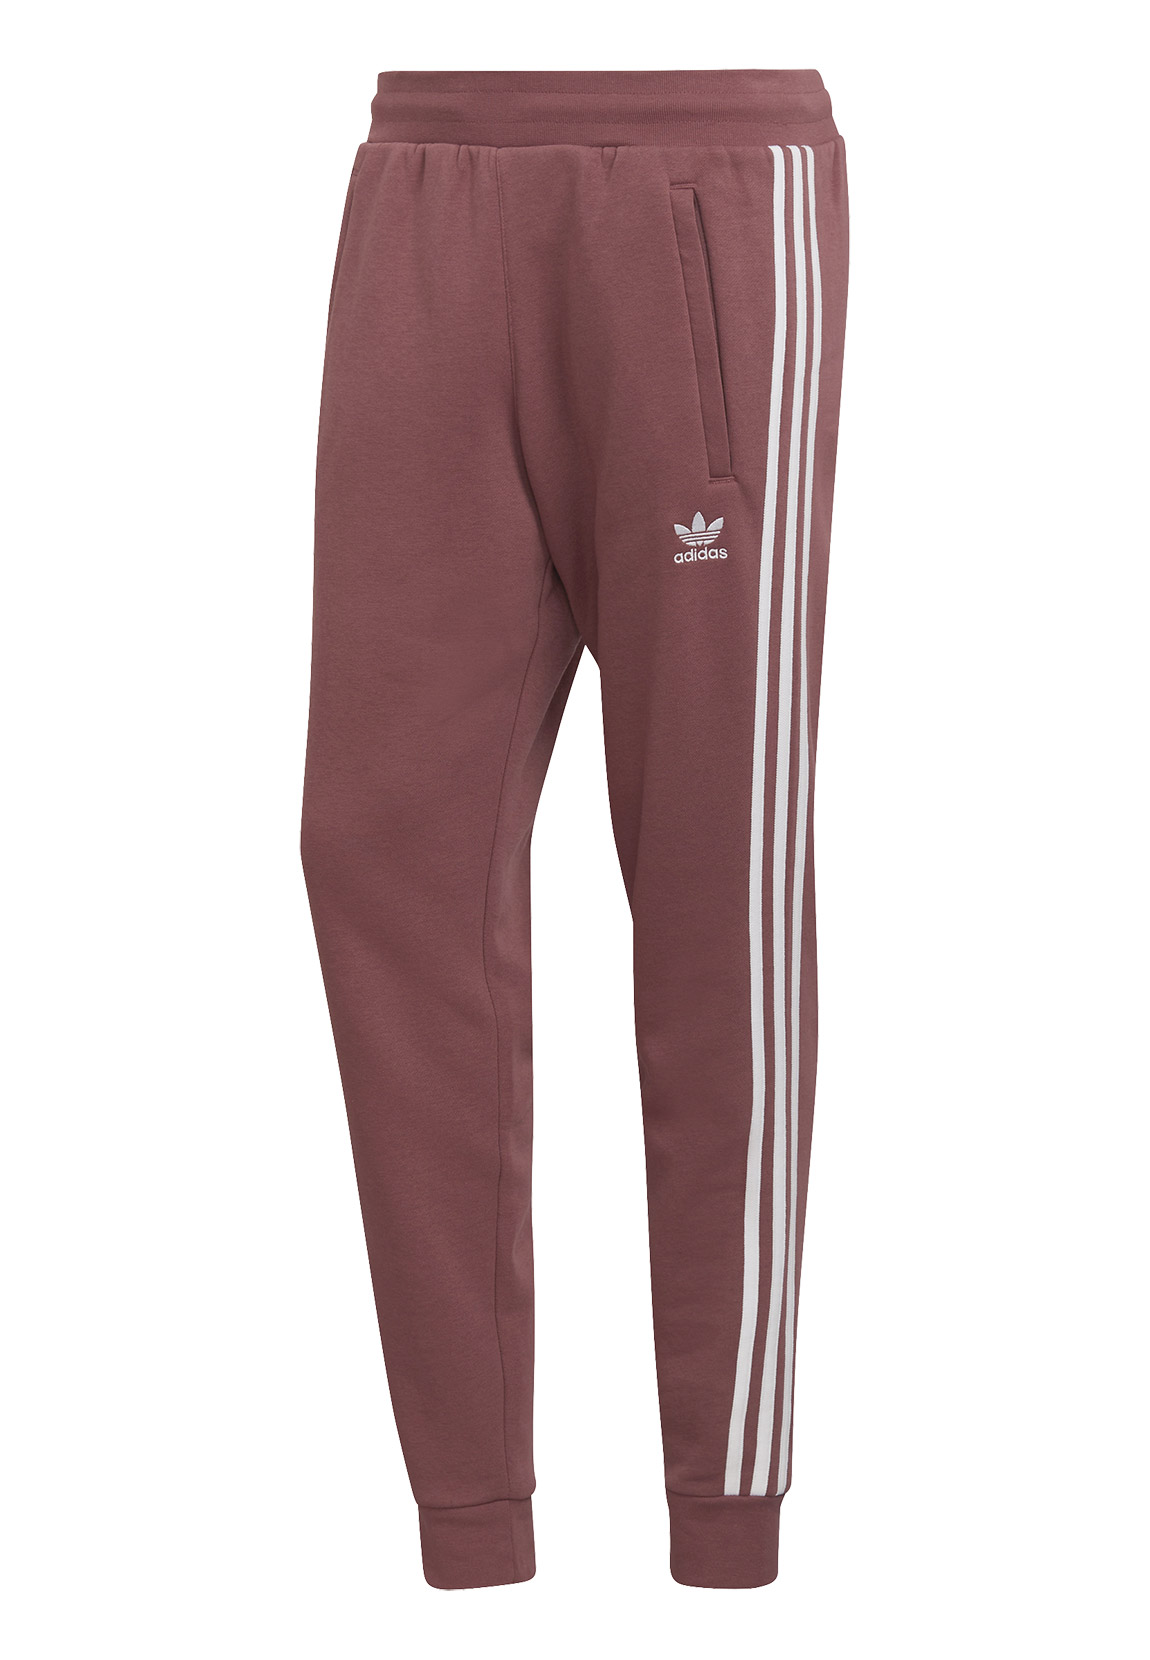 Adidas Originals 3 Stripes Hose L Quiet Crimson günstig online kaufen